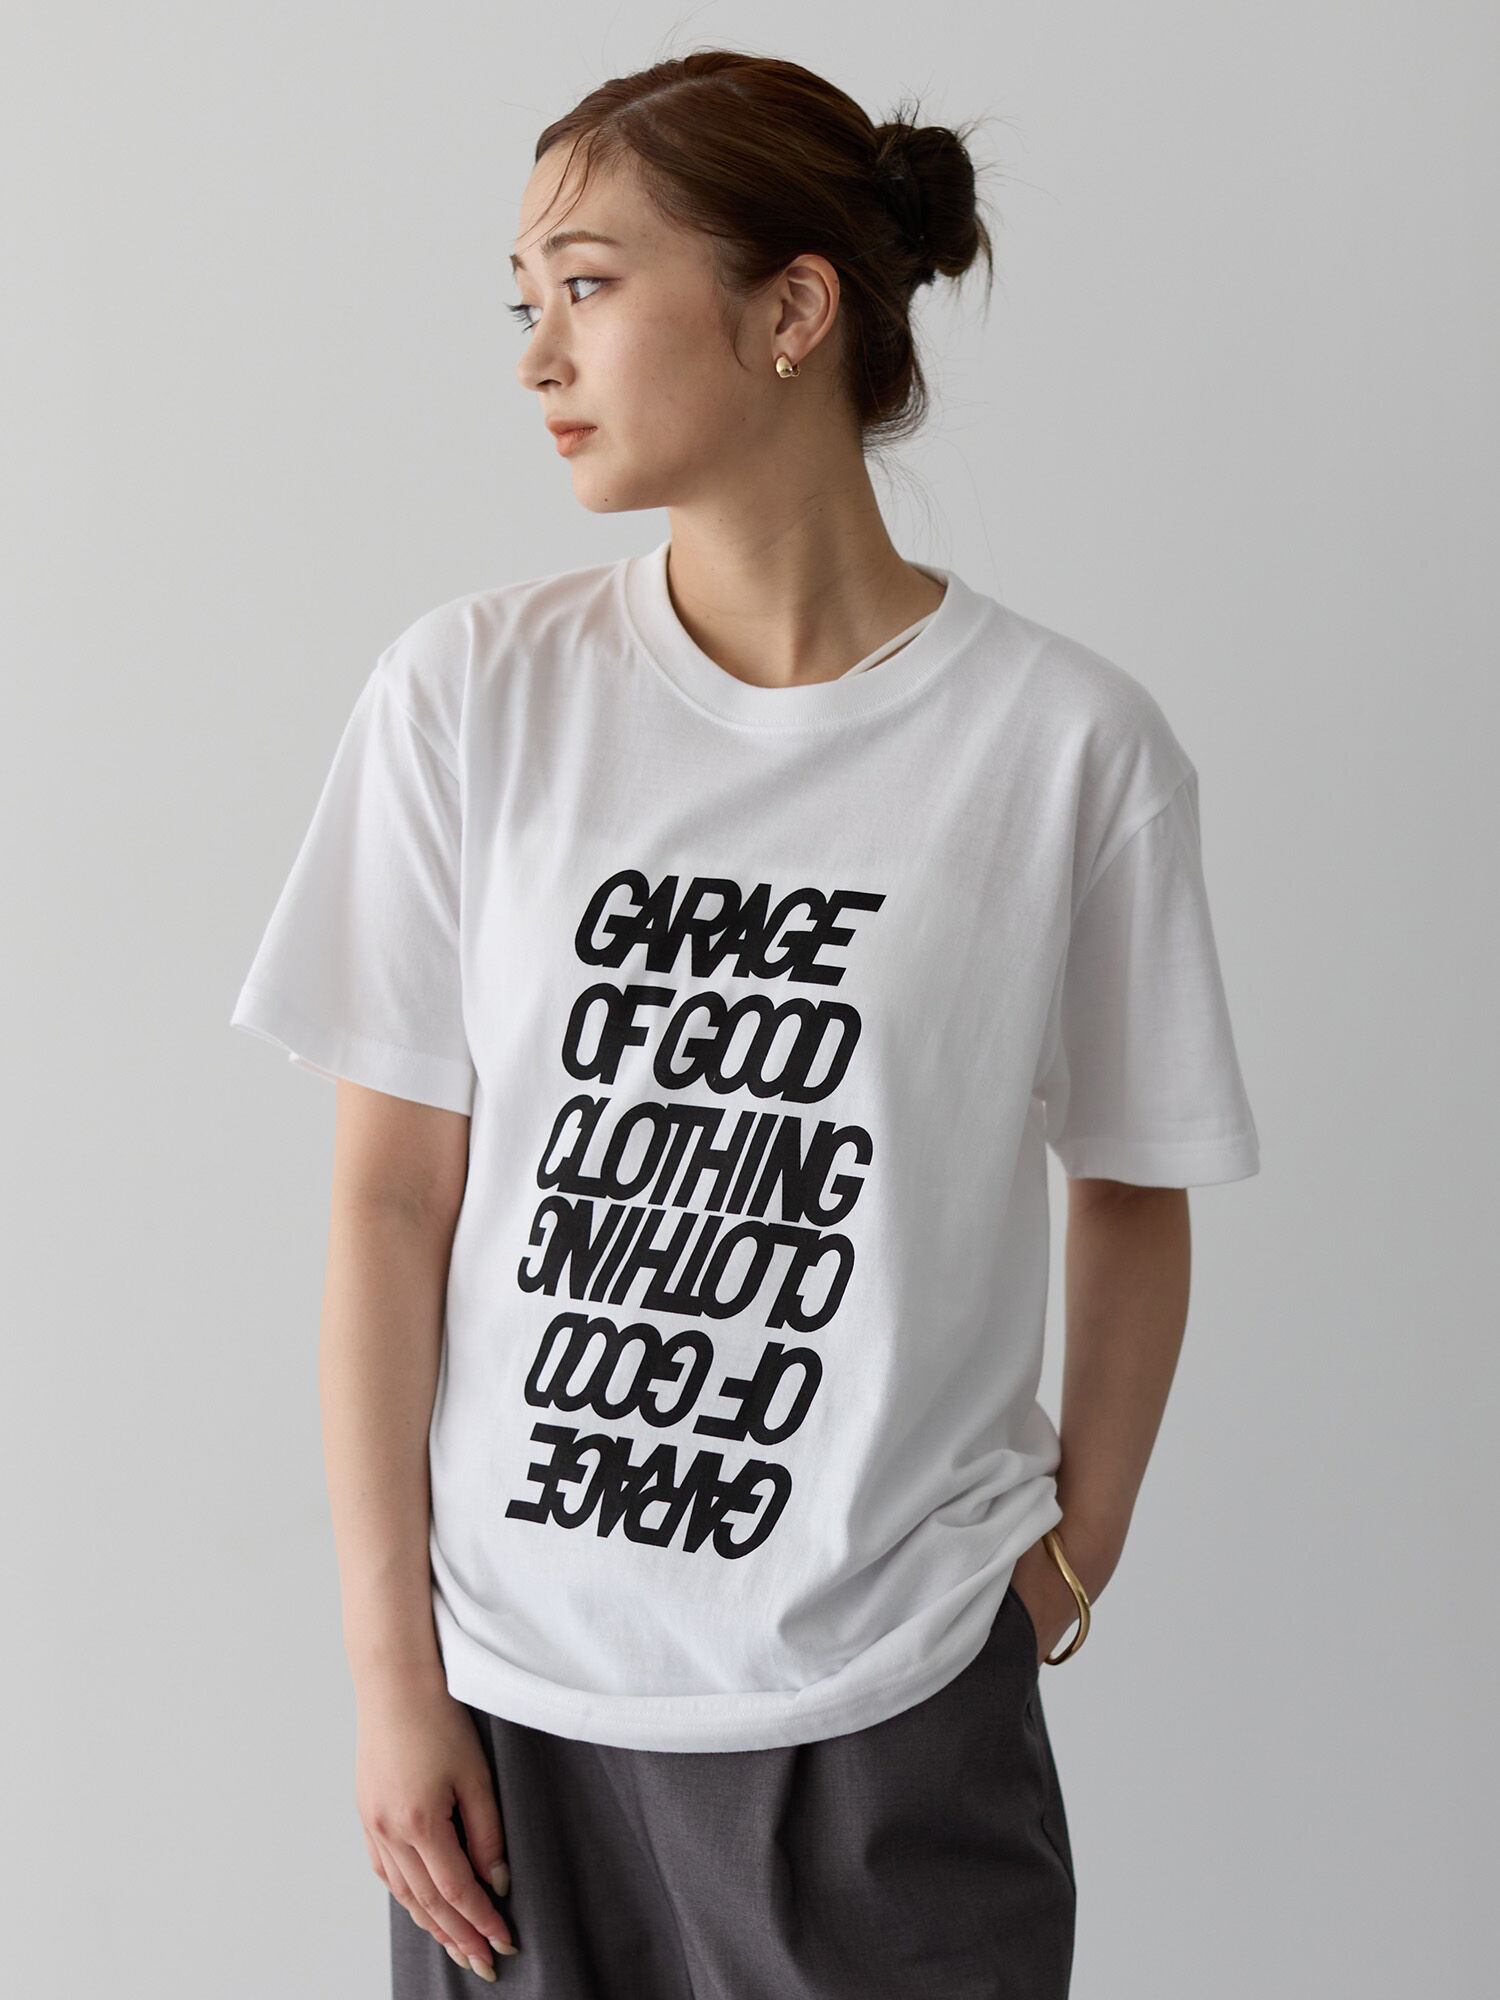 ダブルビッグロゴ半袖Tシャツ（ホワイト/チャコールグレー） / GARAGE